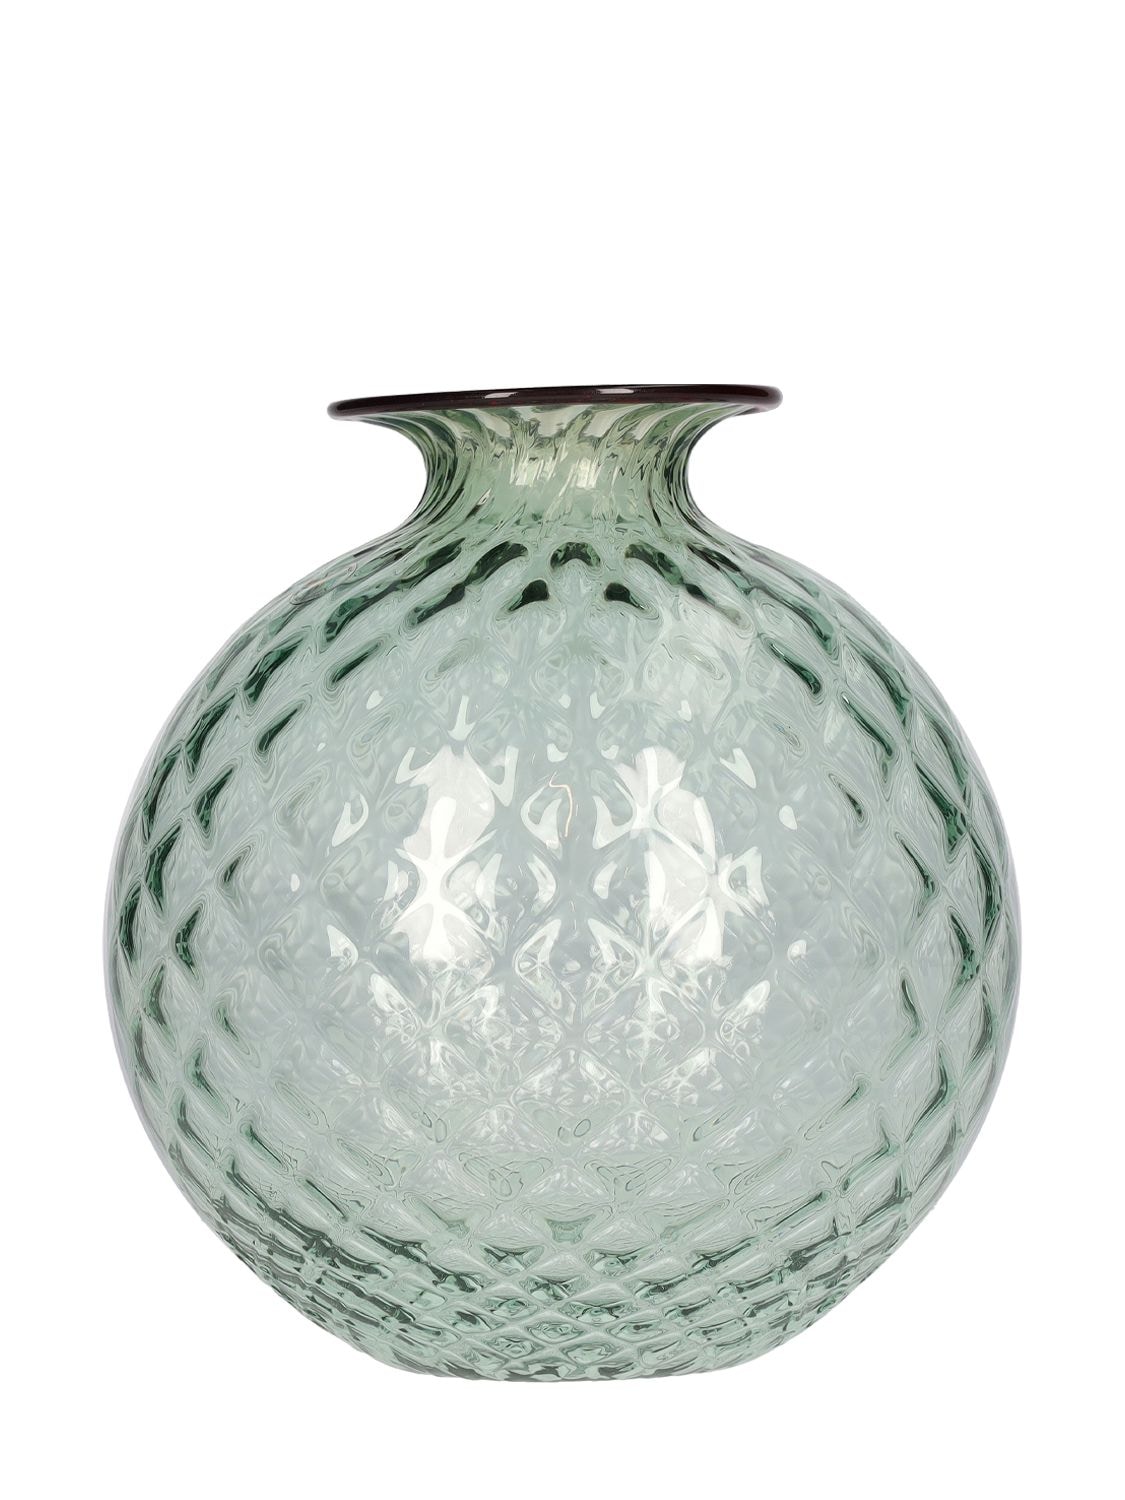 Image of Monofiori Balloton Verde Rio/rosso Vase